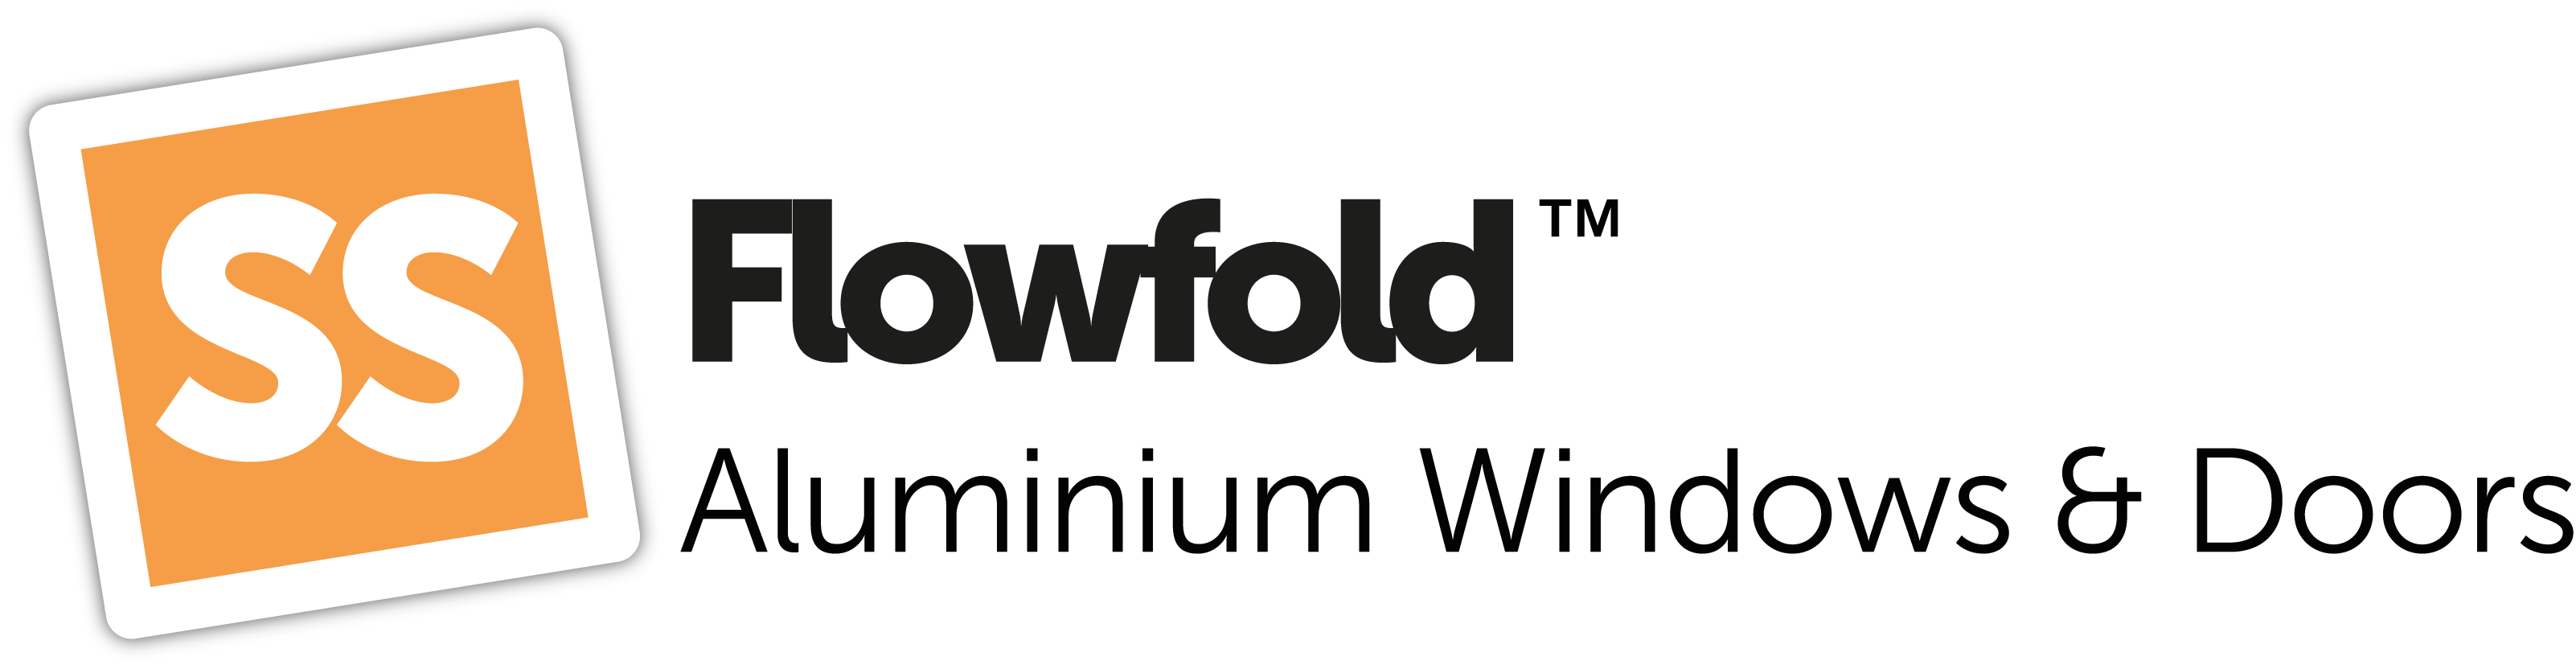 Flowfold Aluminium Doors